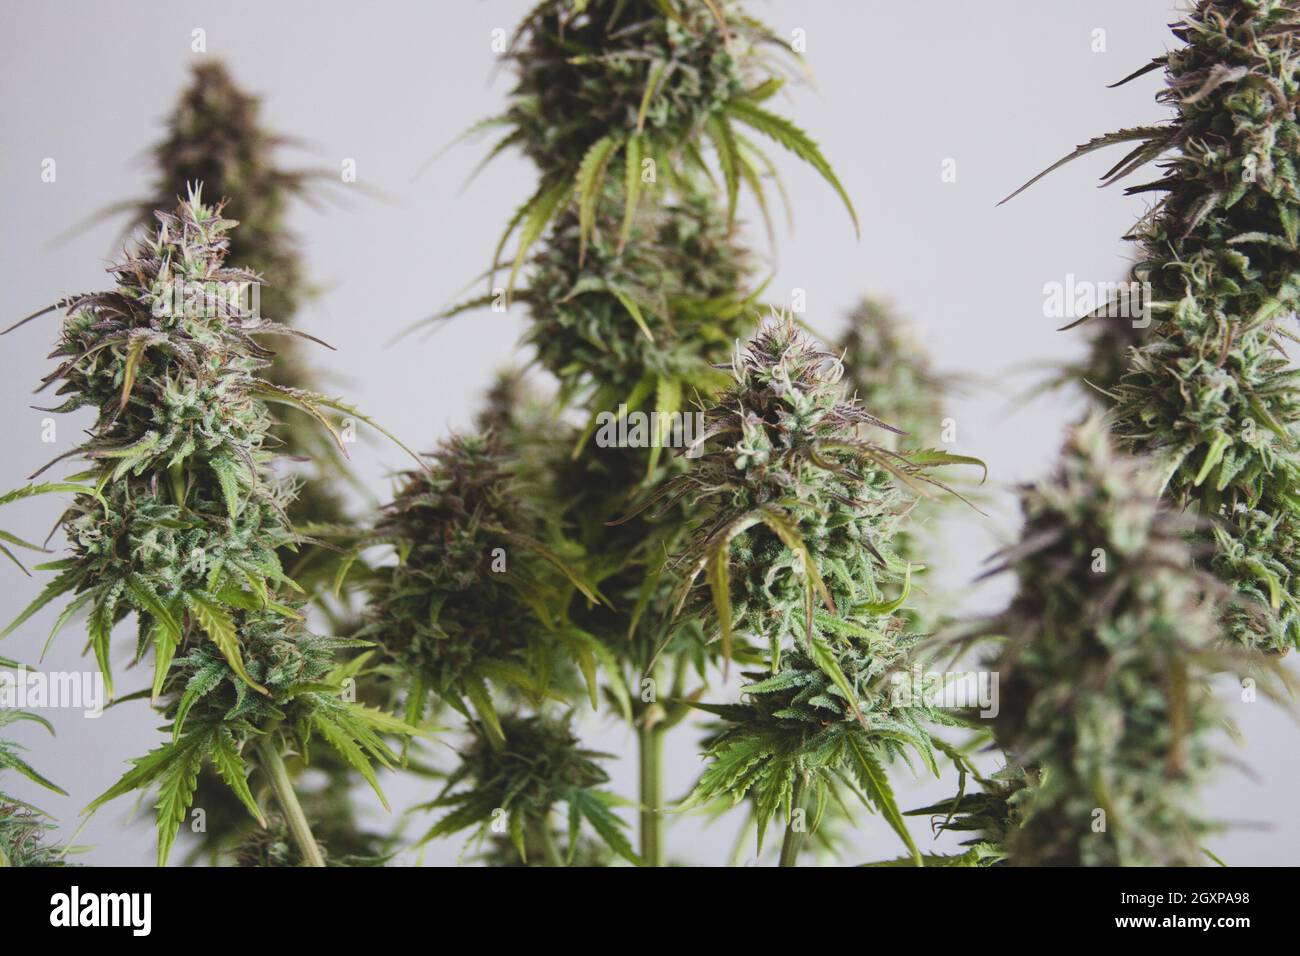 Marihuana female flower plant Stock Photo